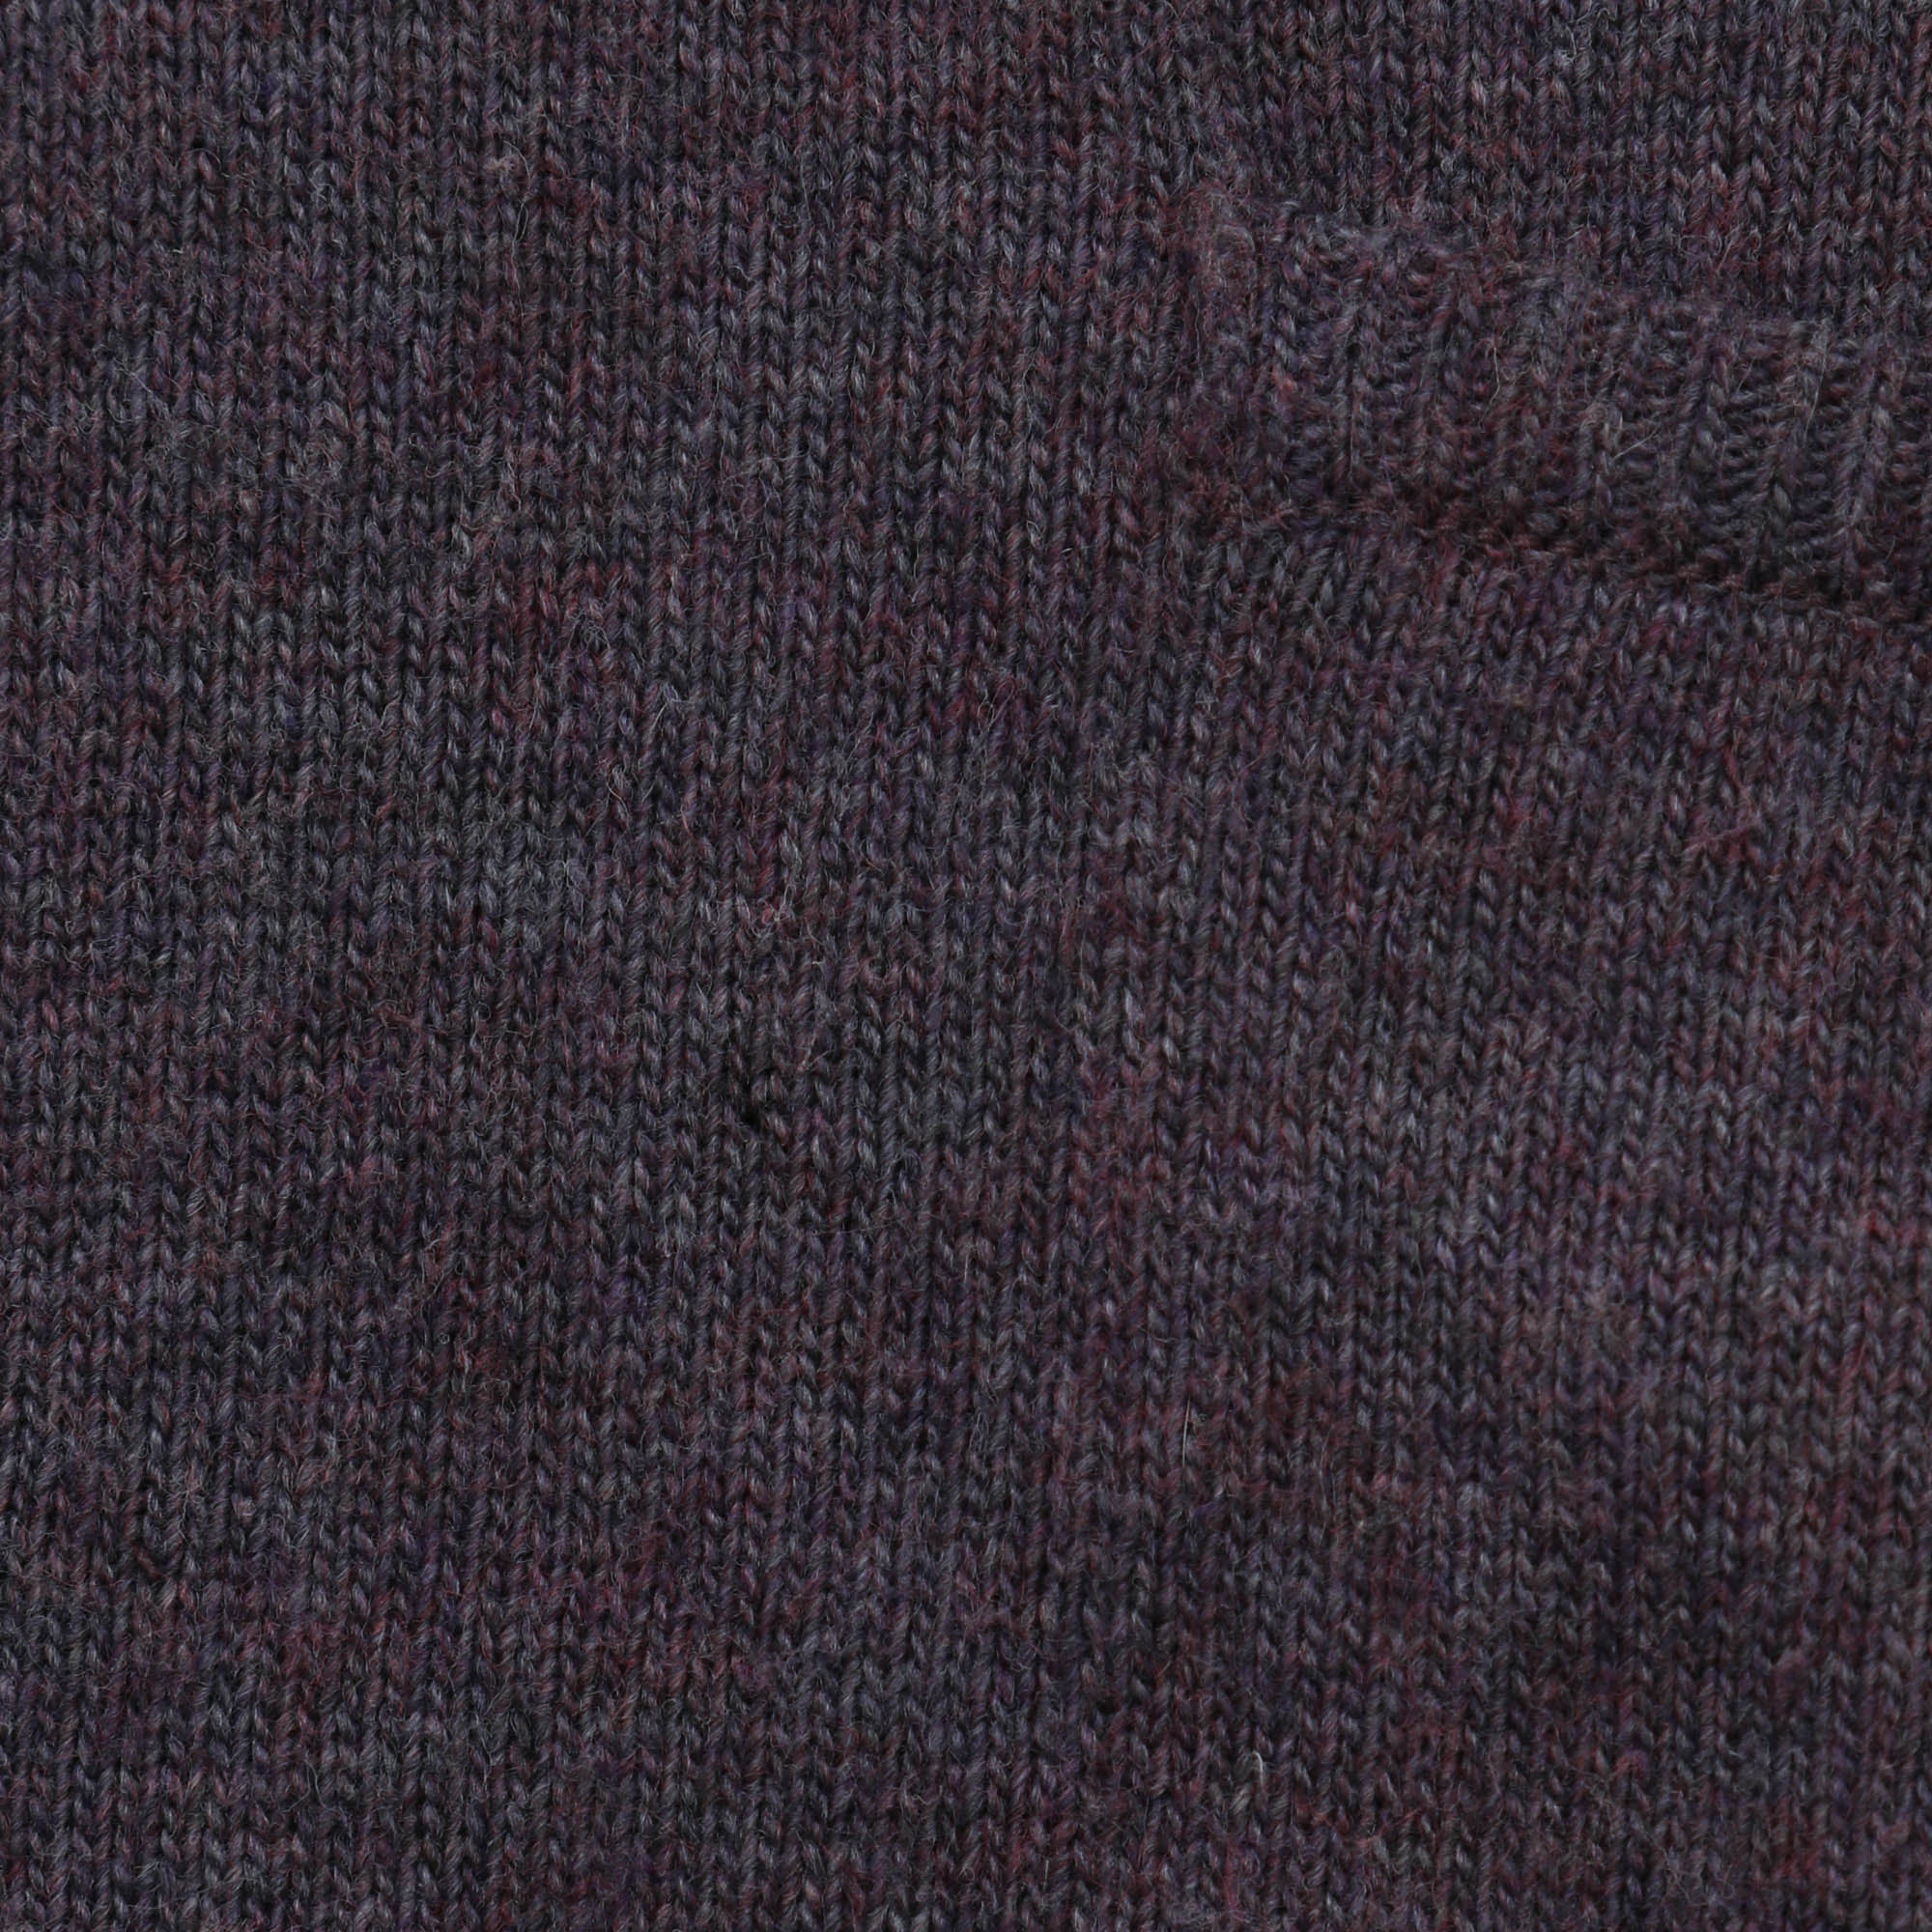 Sportswear Knit Sweater